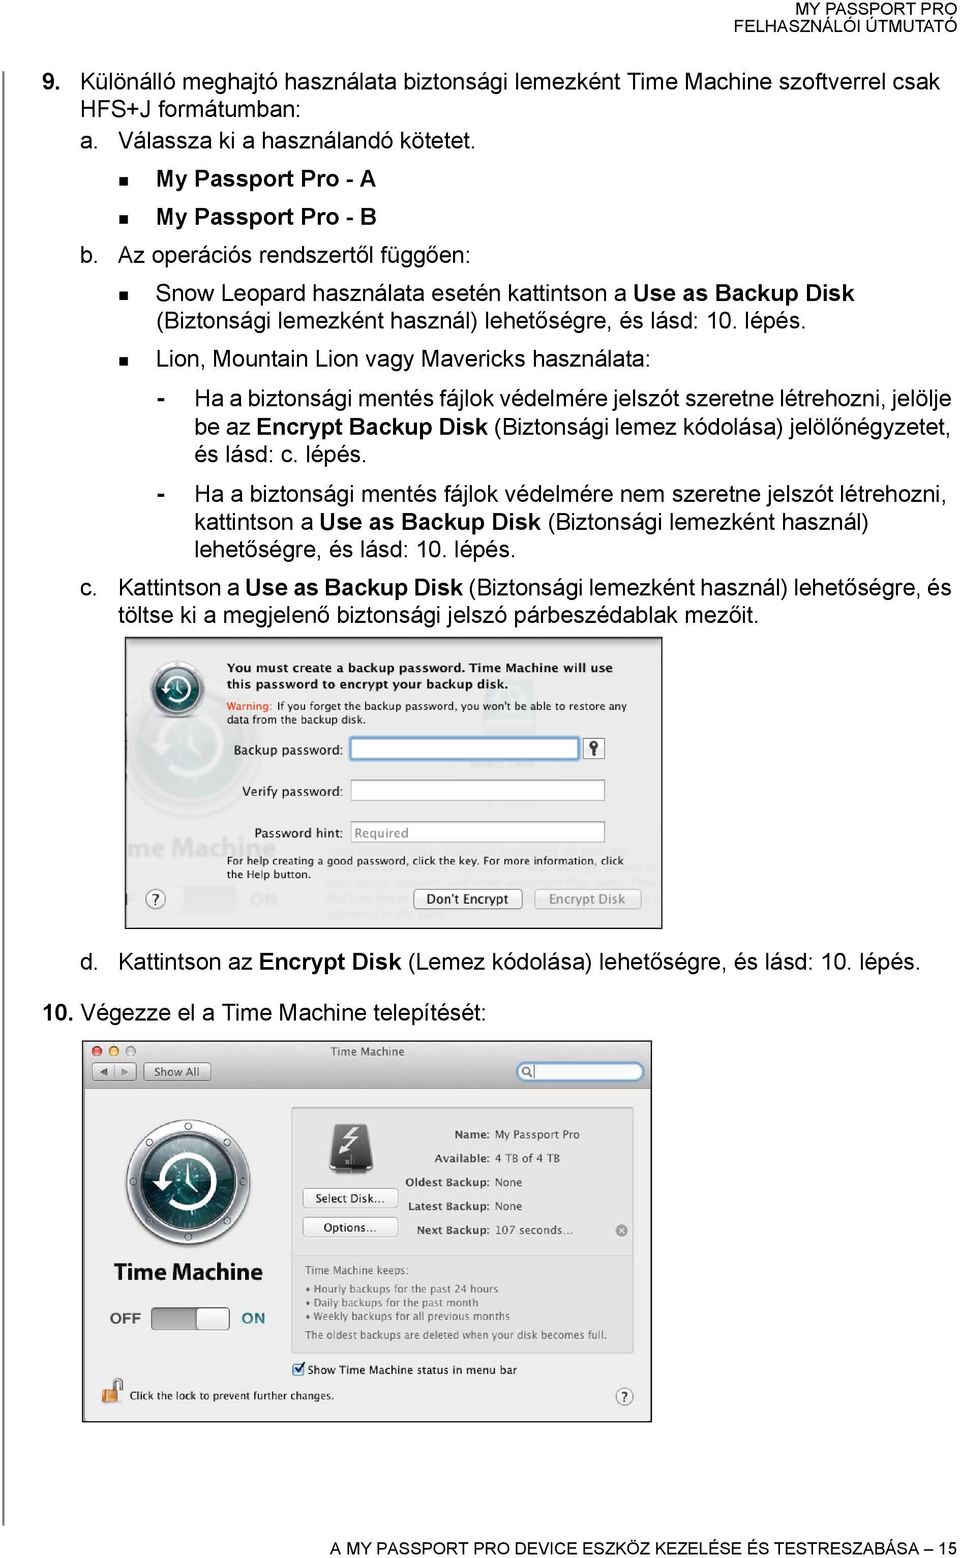 Lion, Mountain Lion vagy Mavericks használata: - Ha a biztonsági mentés fájlok védelmére jelszót szeretne létrehozni, jelölje be az Encrypt Backup Disk (Biztonsági lemez kódolása) jelölőnégyzetet, és